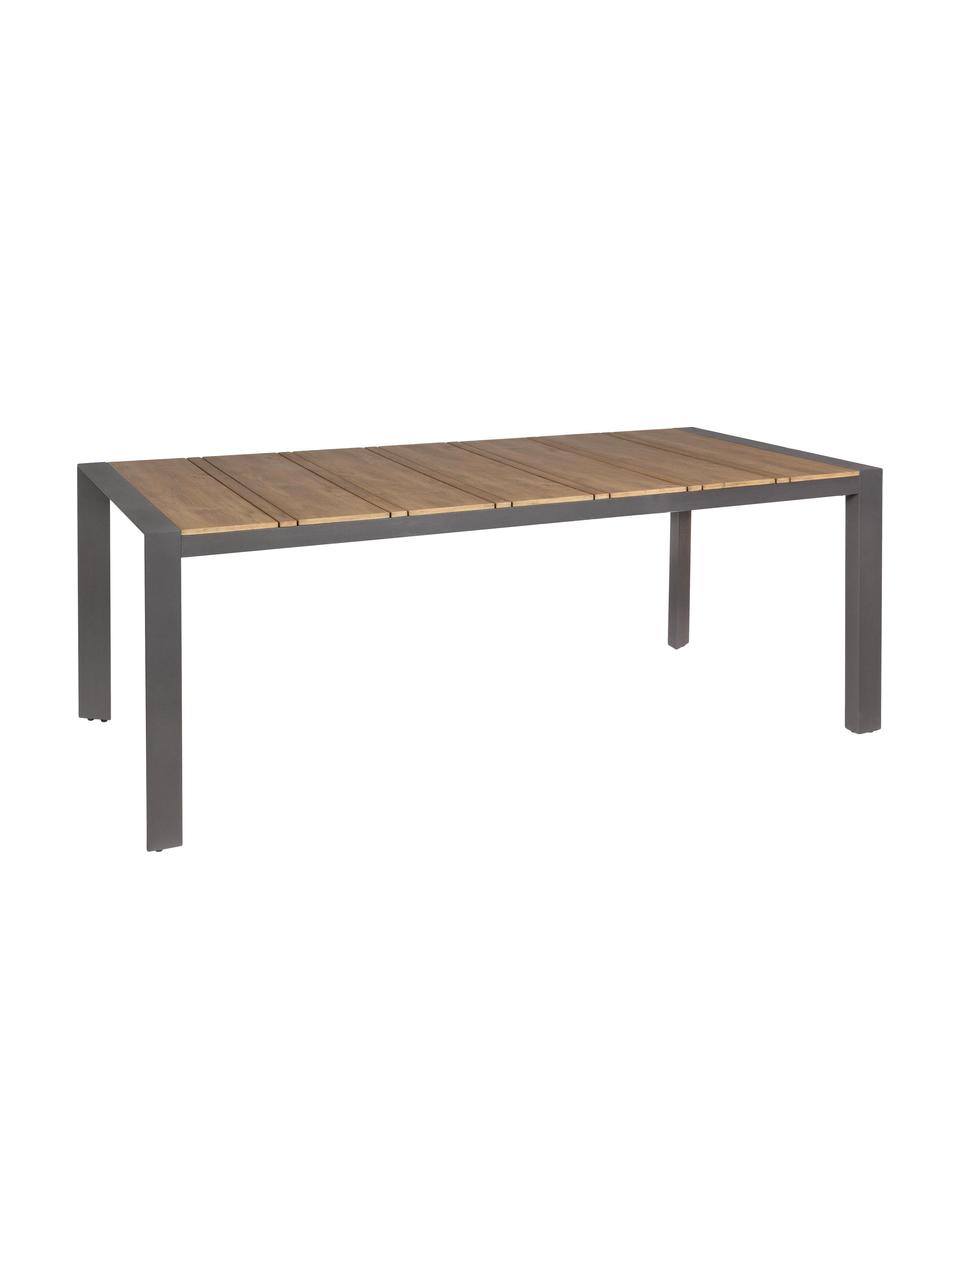 Tavolo da giardino Elias, 198 x 100 cm, Gambe: alluminio verniciato a po, Antracite, marrone, Larg. 198 x Prof. 100 cm